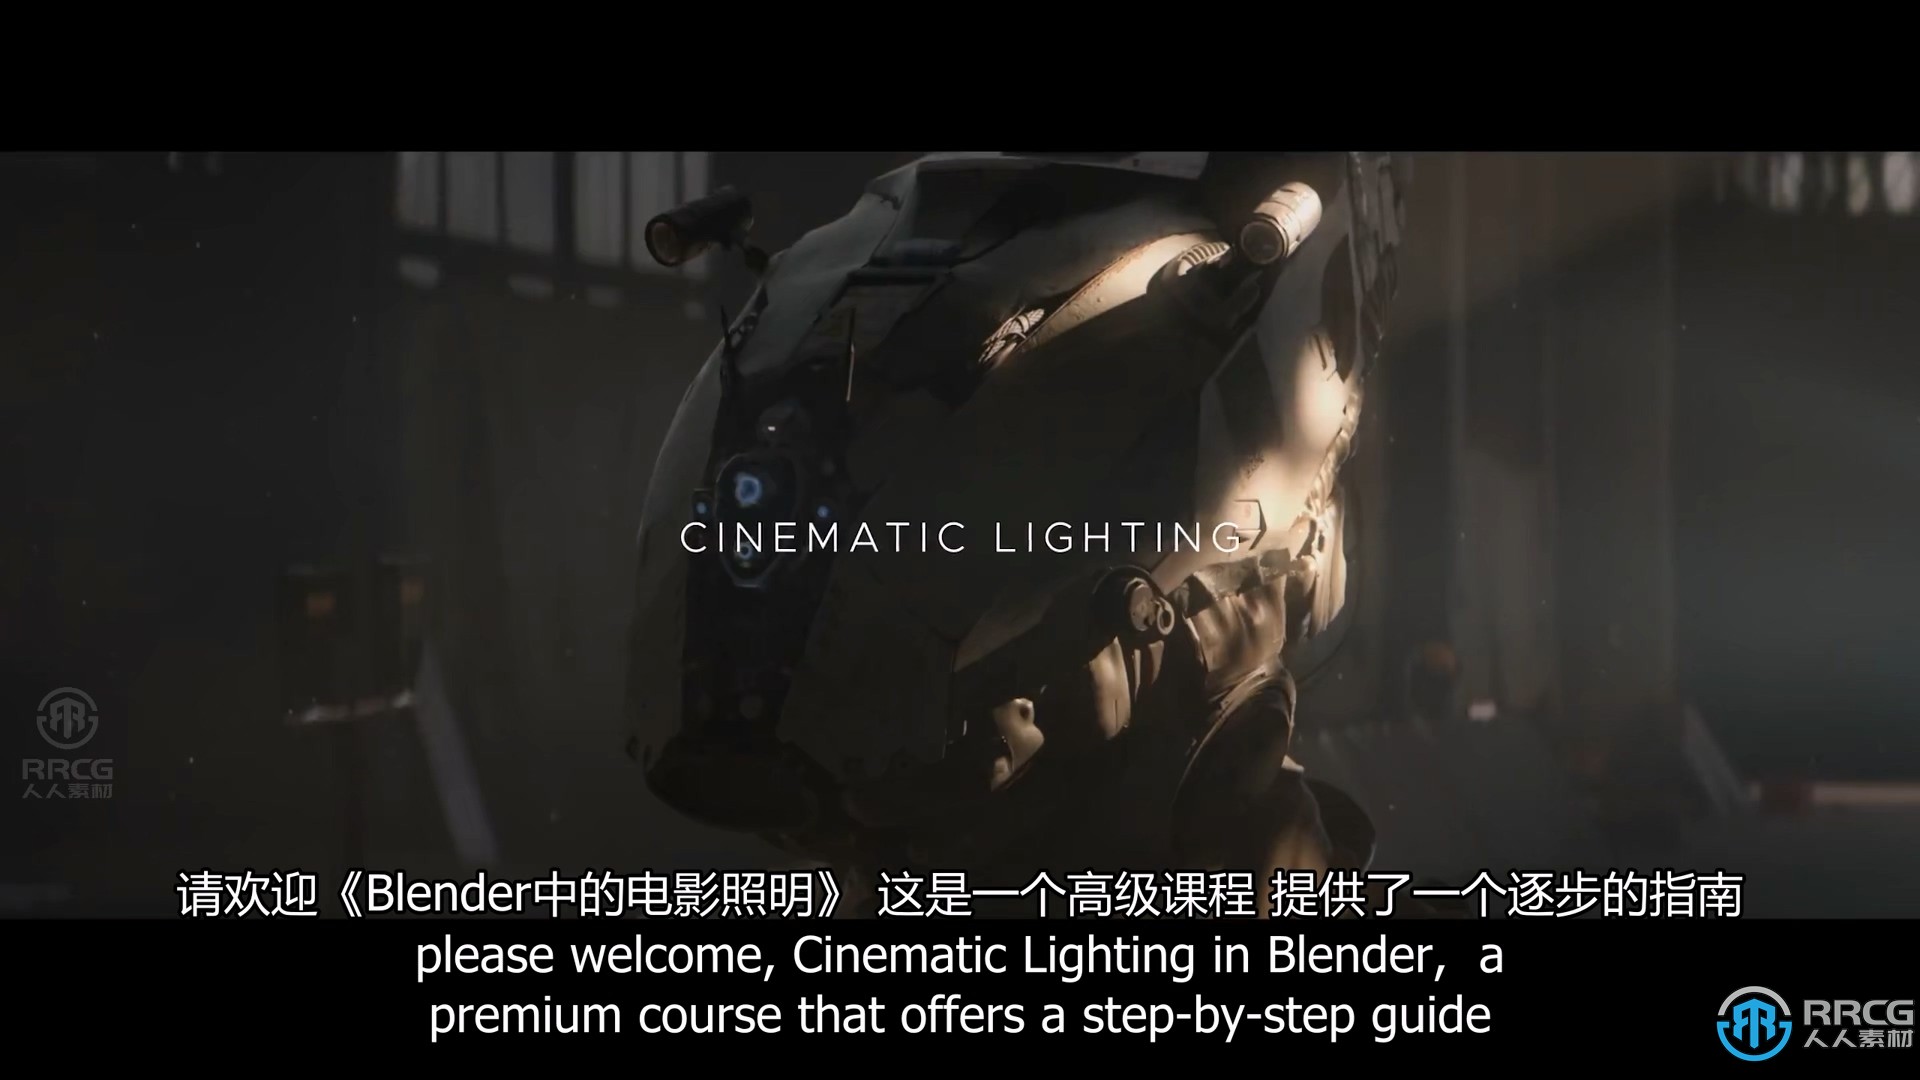 【中文字幕】Blender影视级灯光照明技术大师班视频教程